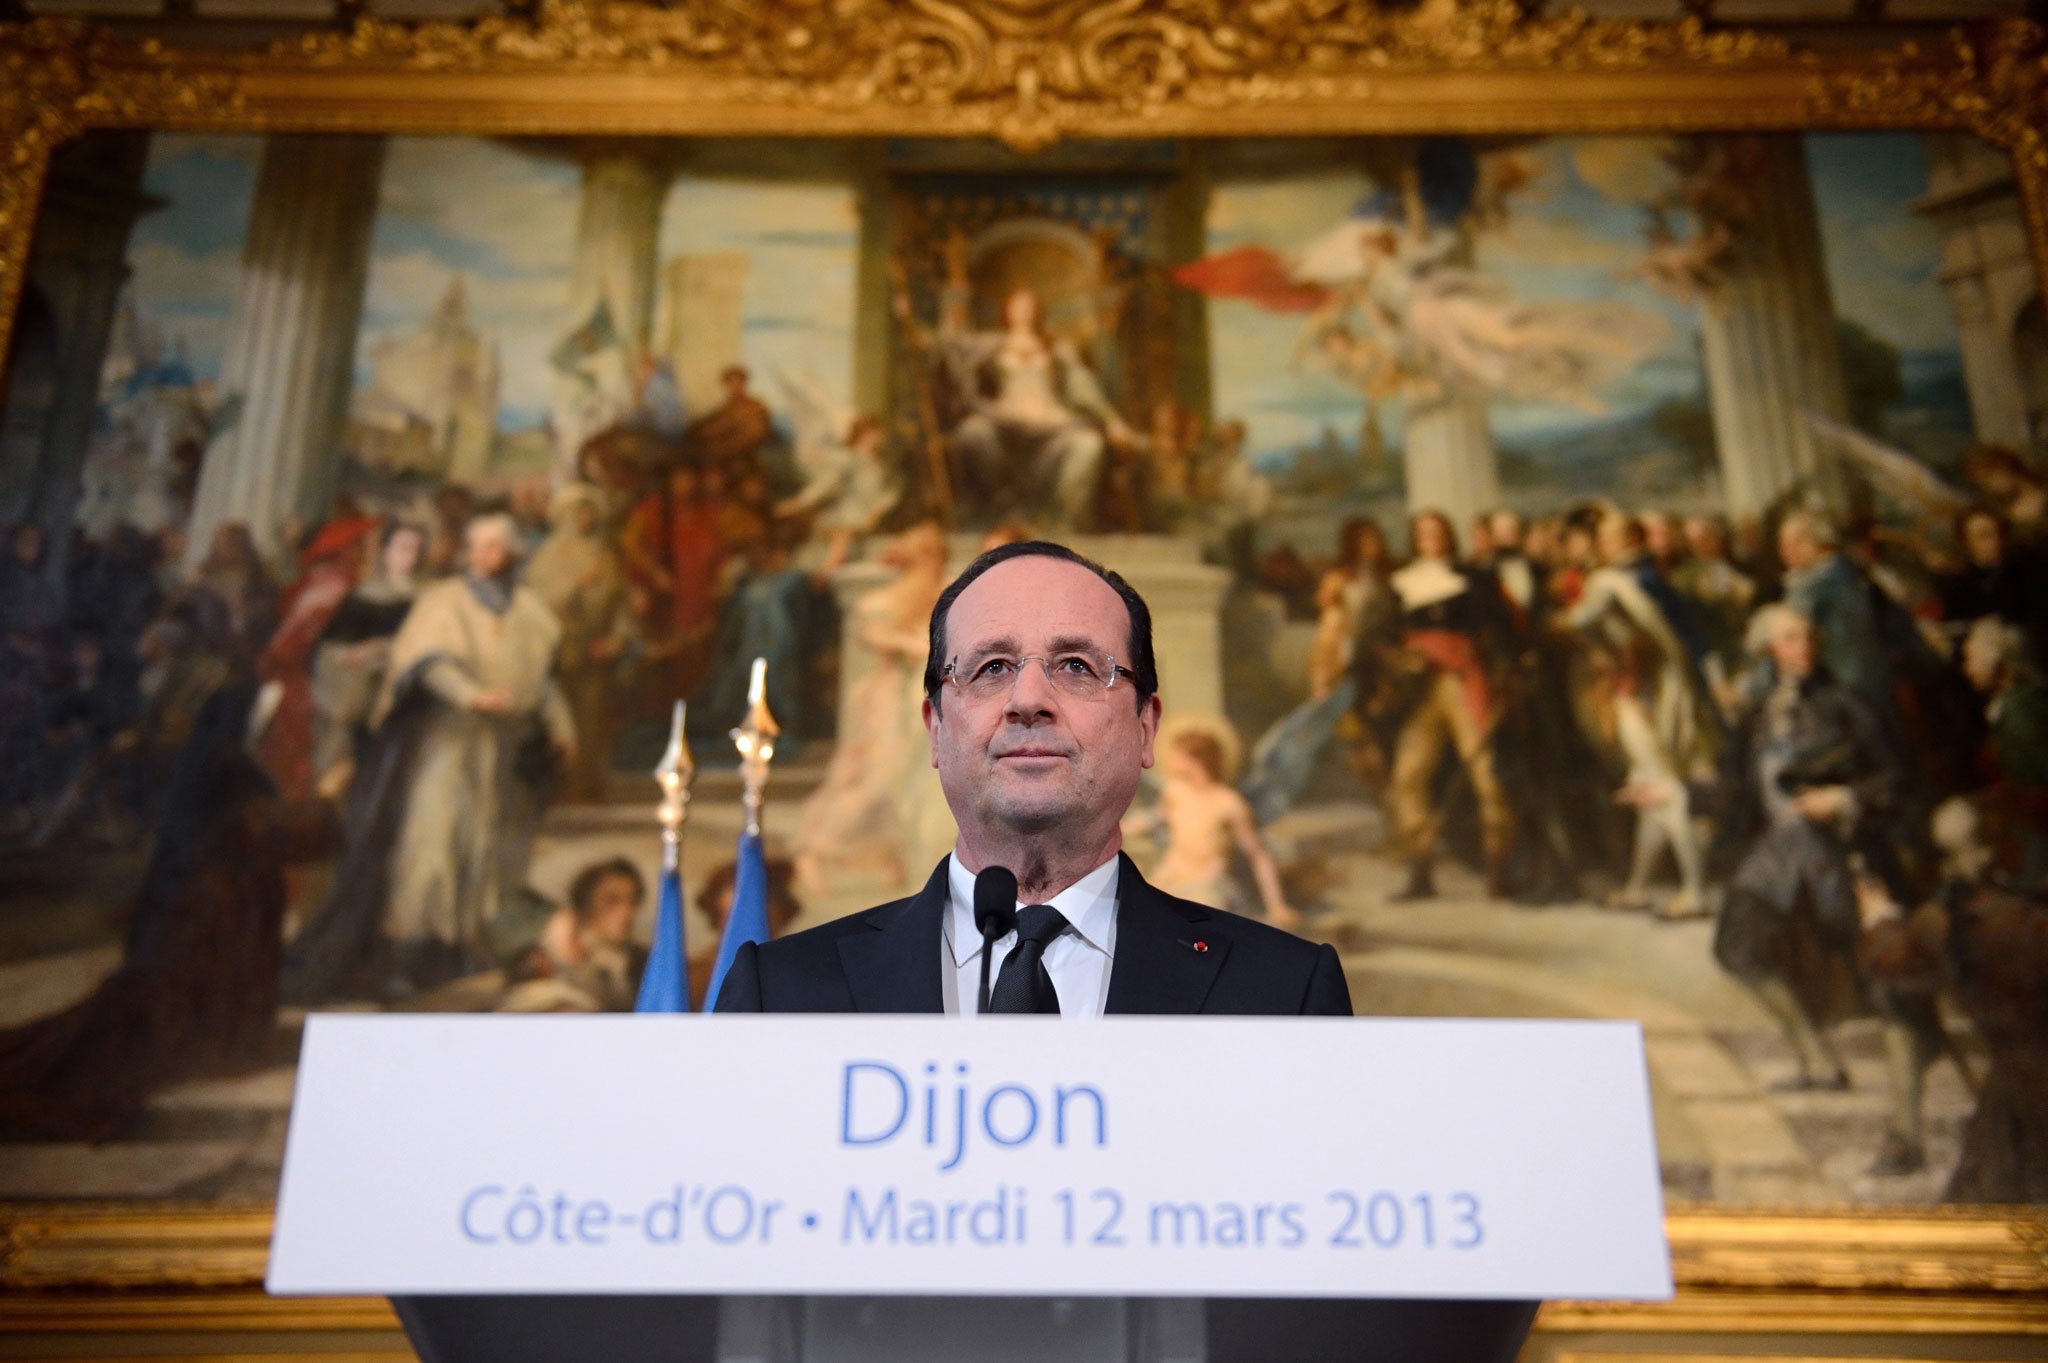 President Hollande gives a speech in Dijon